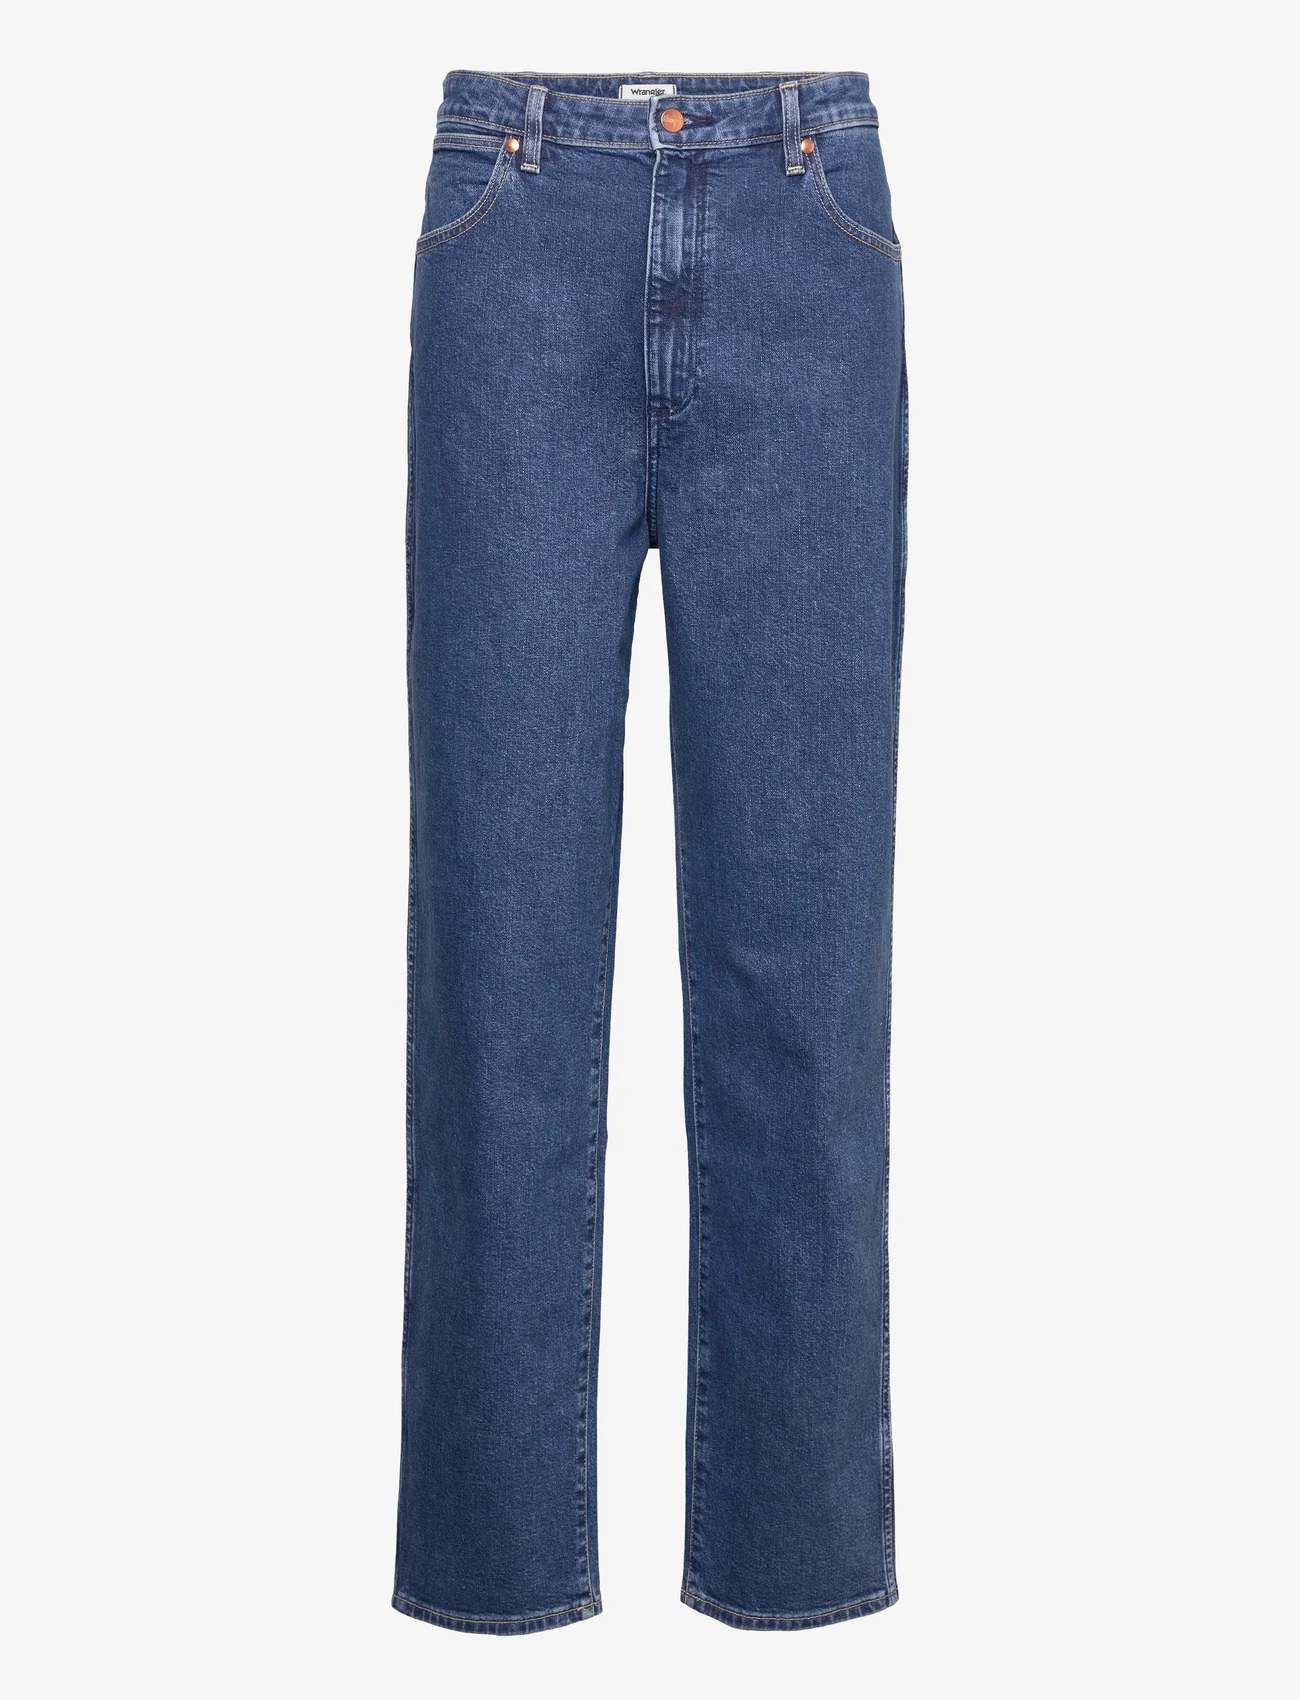 Wrangler - MOM STRAIGHT - raka jeans - wanda - 0